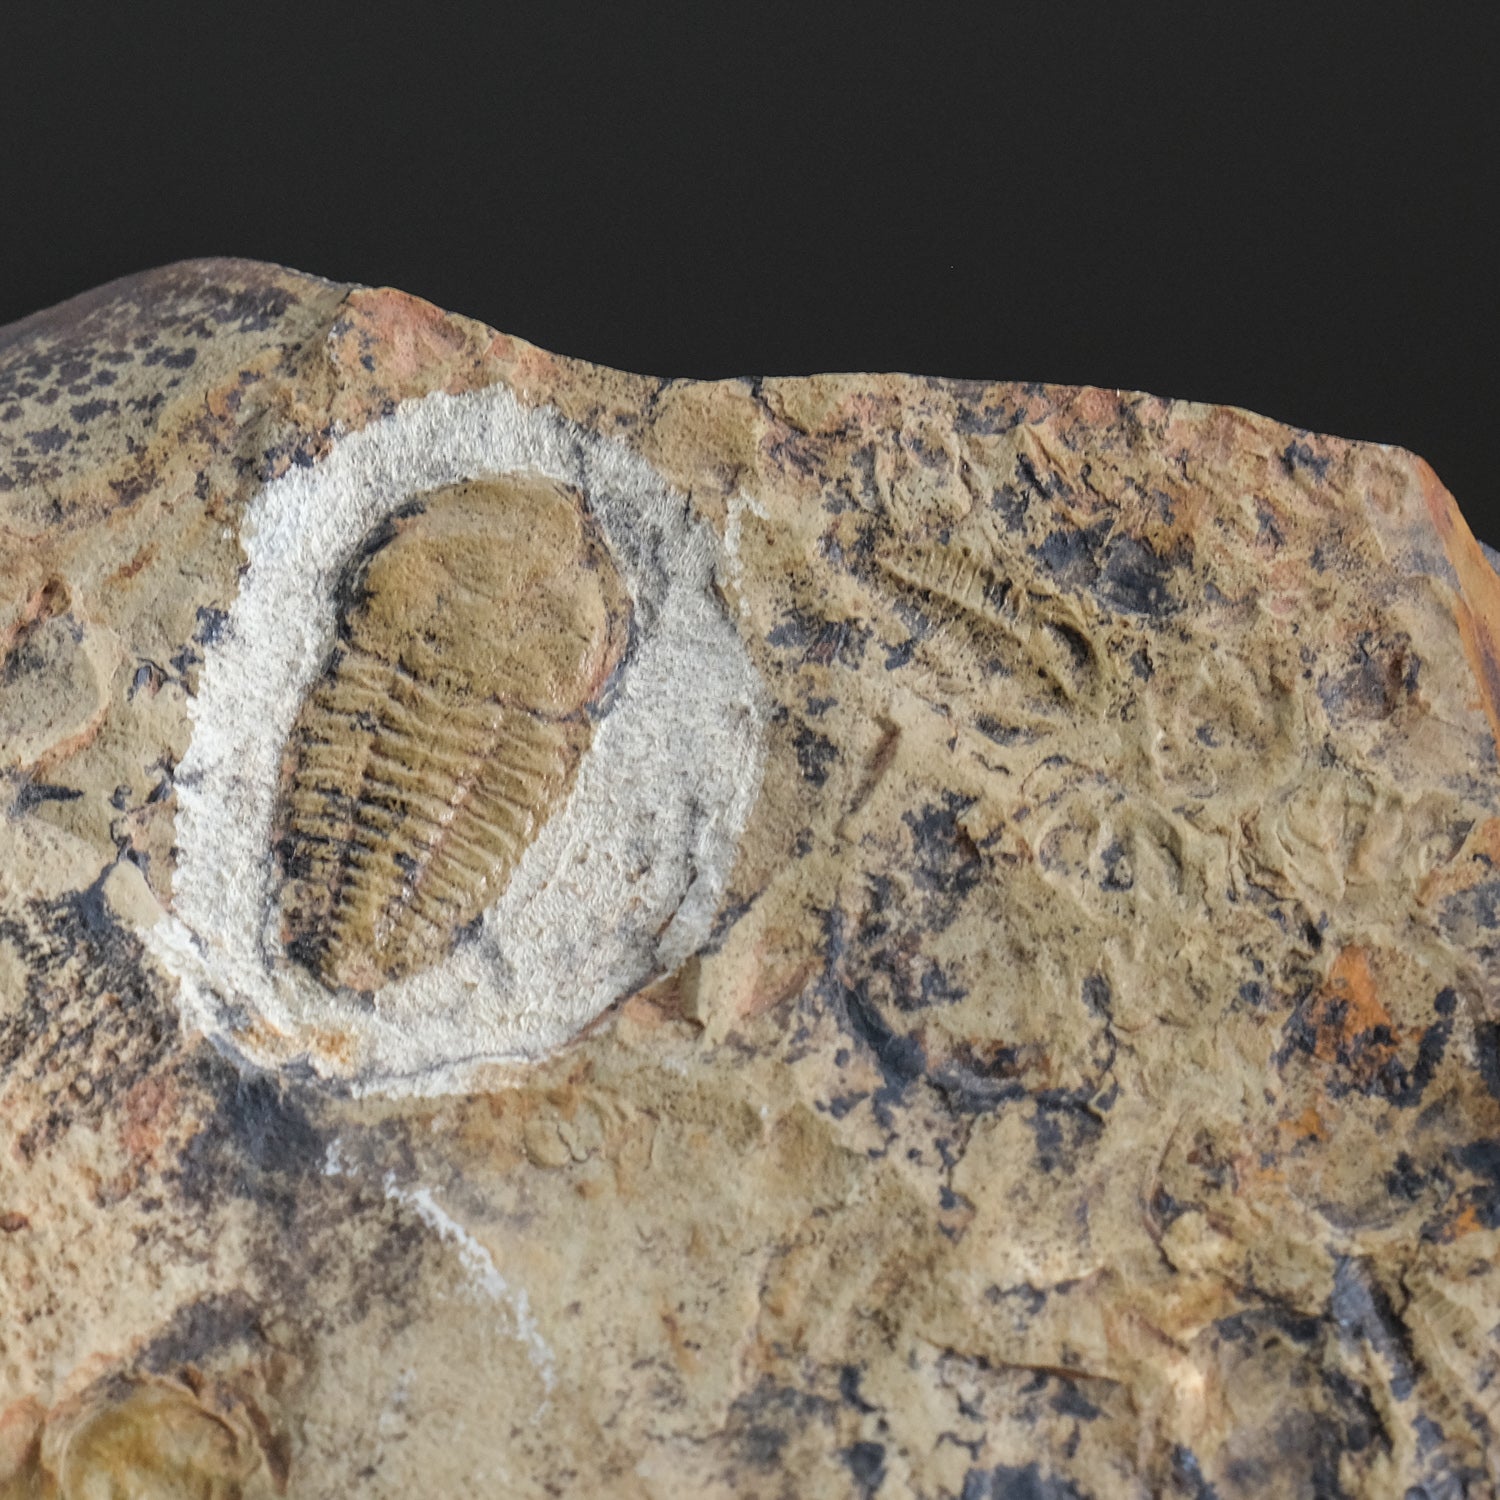 Genuine Trilobite (Ptychopariida) fossil on Matrix with acrylic display stand (1 lb)